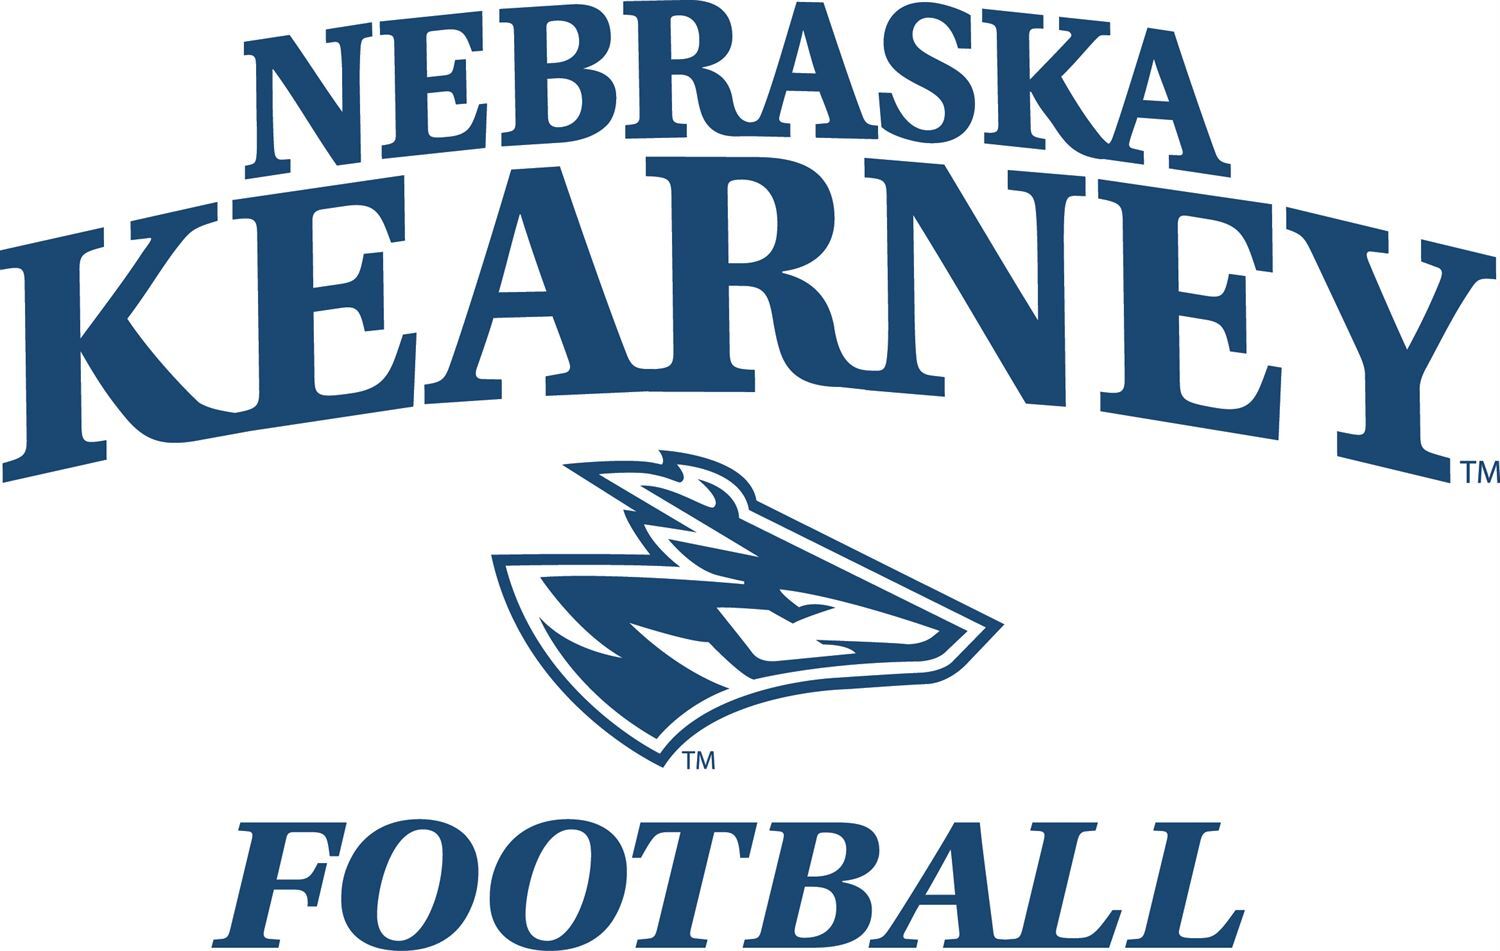 Josh Lynn - Head Football Coach - University of Nebraska-Kearney